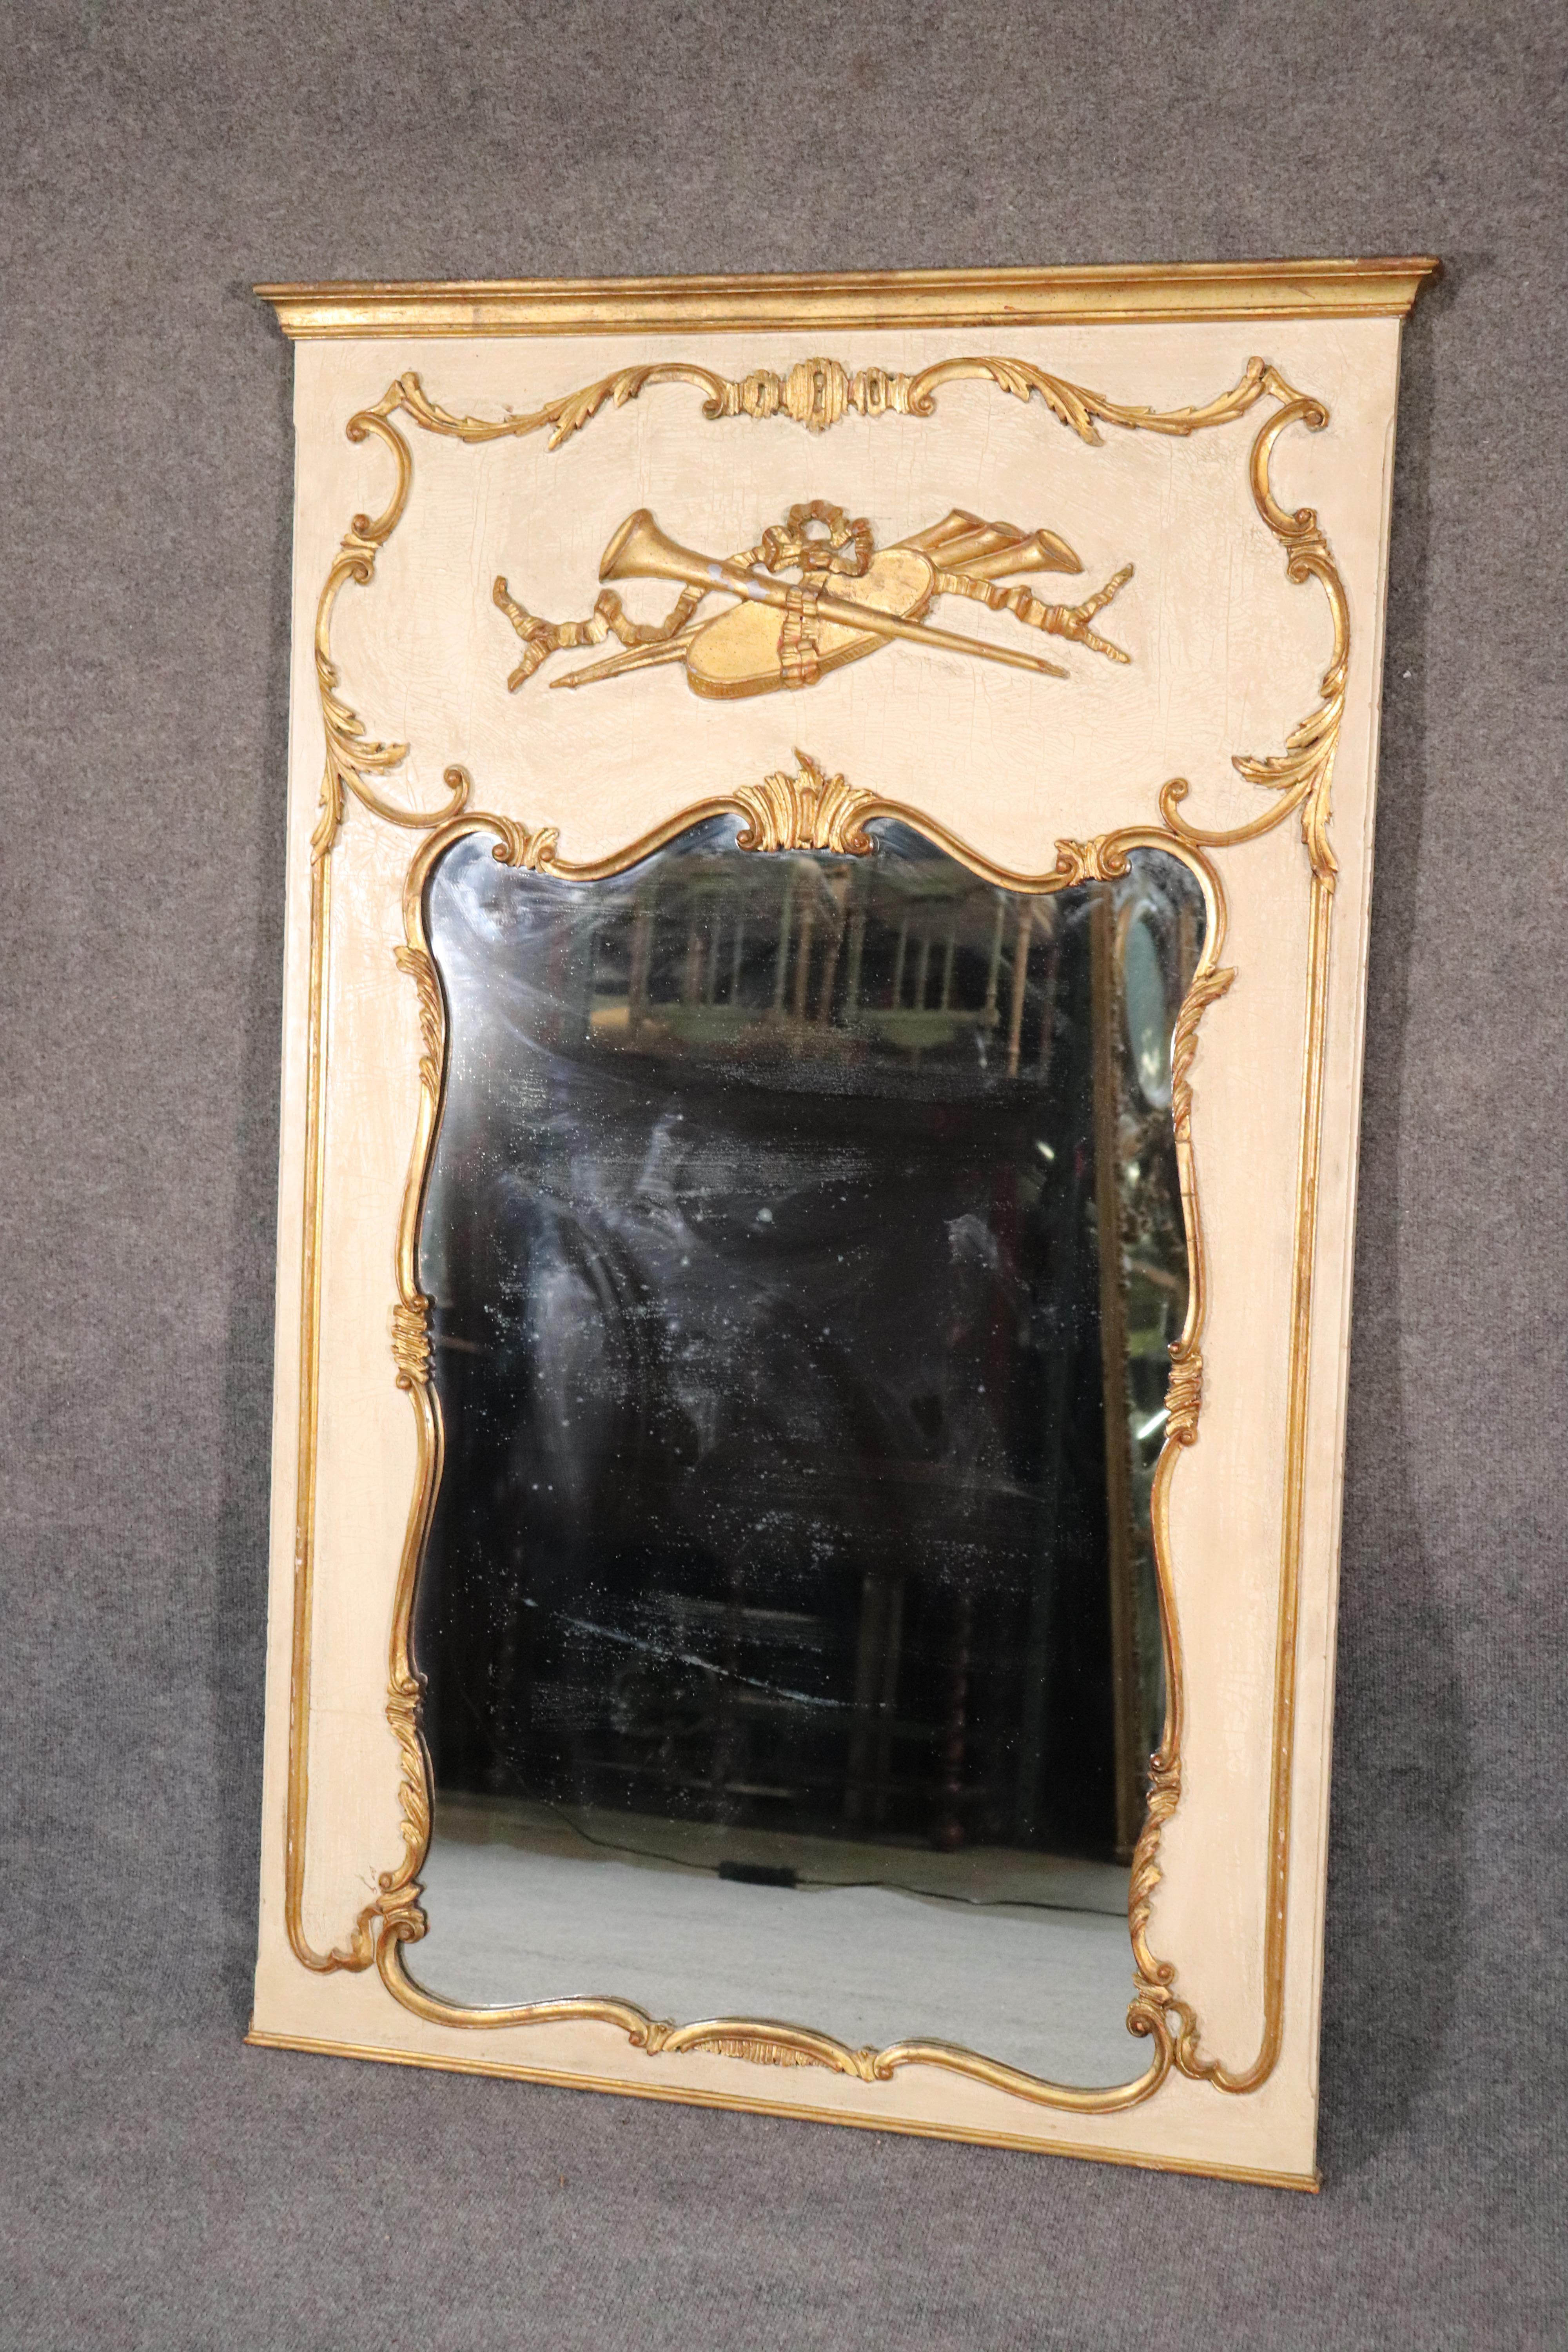 Il s'agit d'un magnifique miroir Louis XV français de fabrication italienne, peint à la crème et à la feuille d'or. Le miroir est en bon état d'origine. Le miroir mesure 59 pouces de hauteur x 38 pouces de largeur x 2 pouces de profondeur.